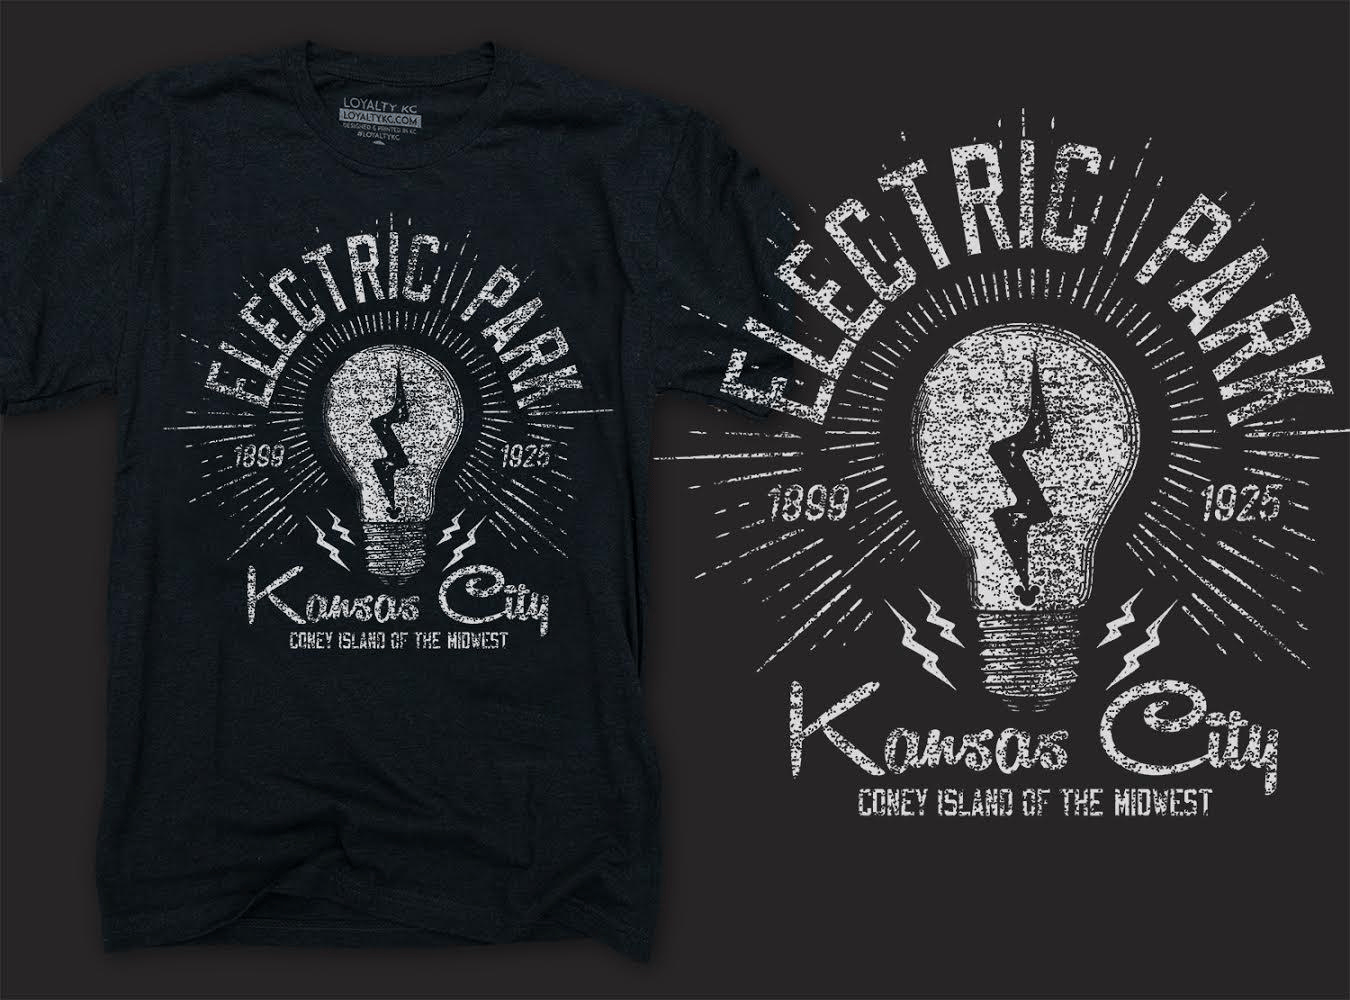 unique kc shirts